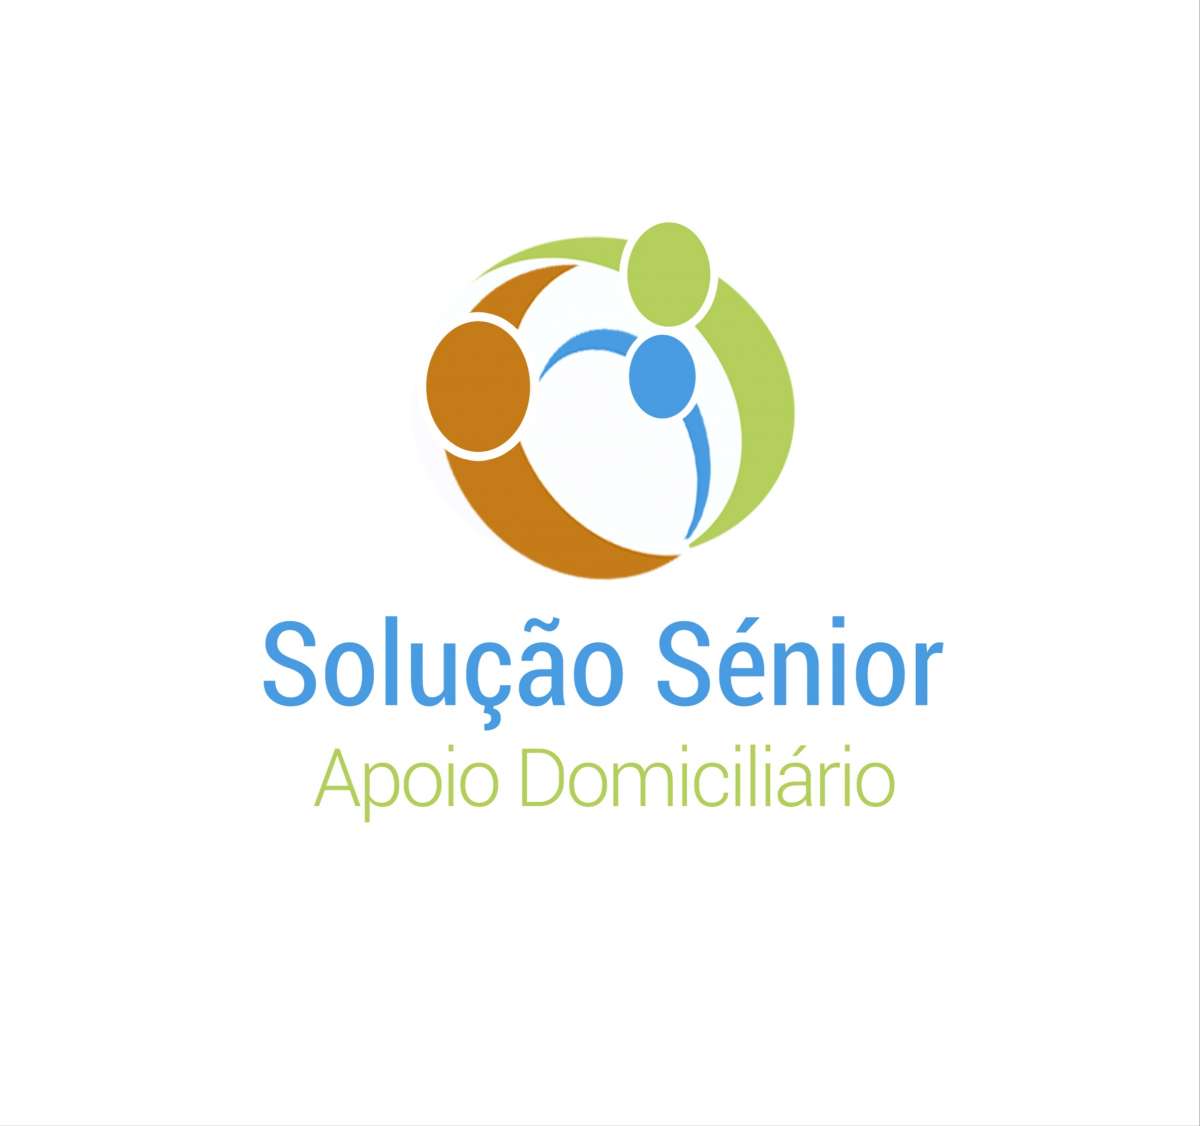 Solução Sénior, Apoio Domiciliário a pessoas idosas - Vila Franca de Xira - Apoio ao Domícilio e Lares de Idosos